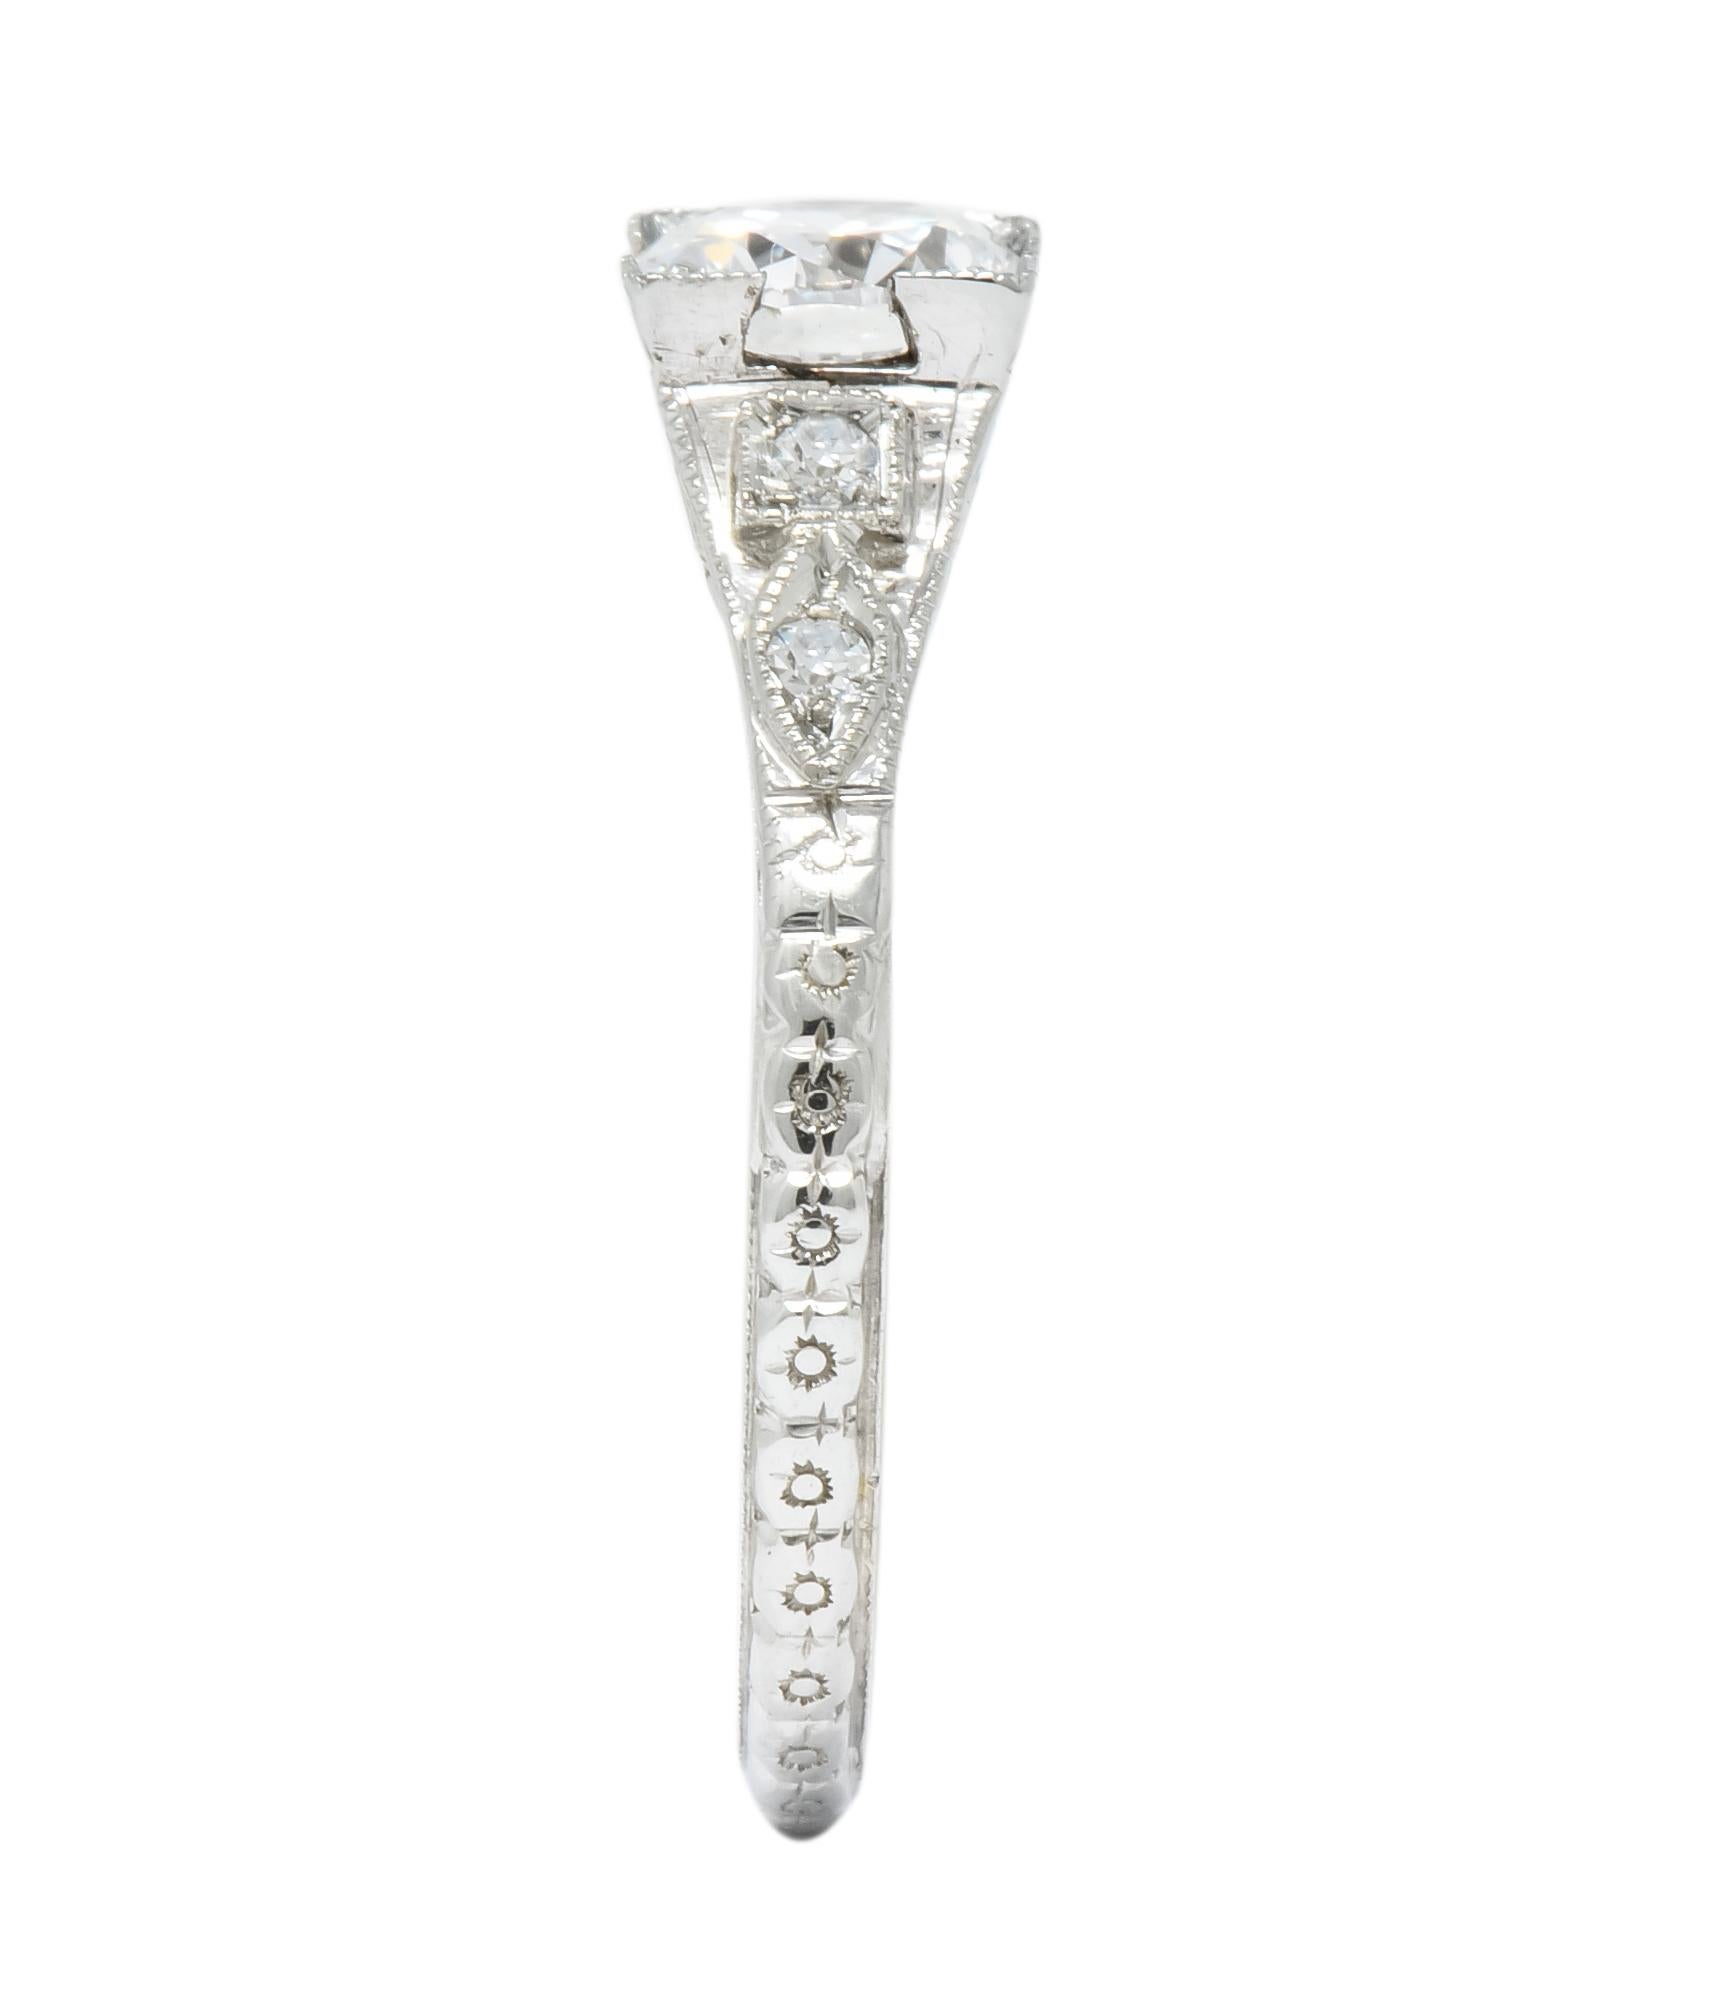 Women's or Men's White Rose Mfg. Co. Art Deco Diamond 18 Karat White Gold Engagement Ring